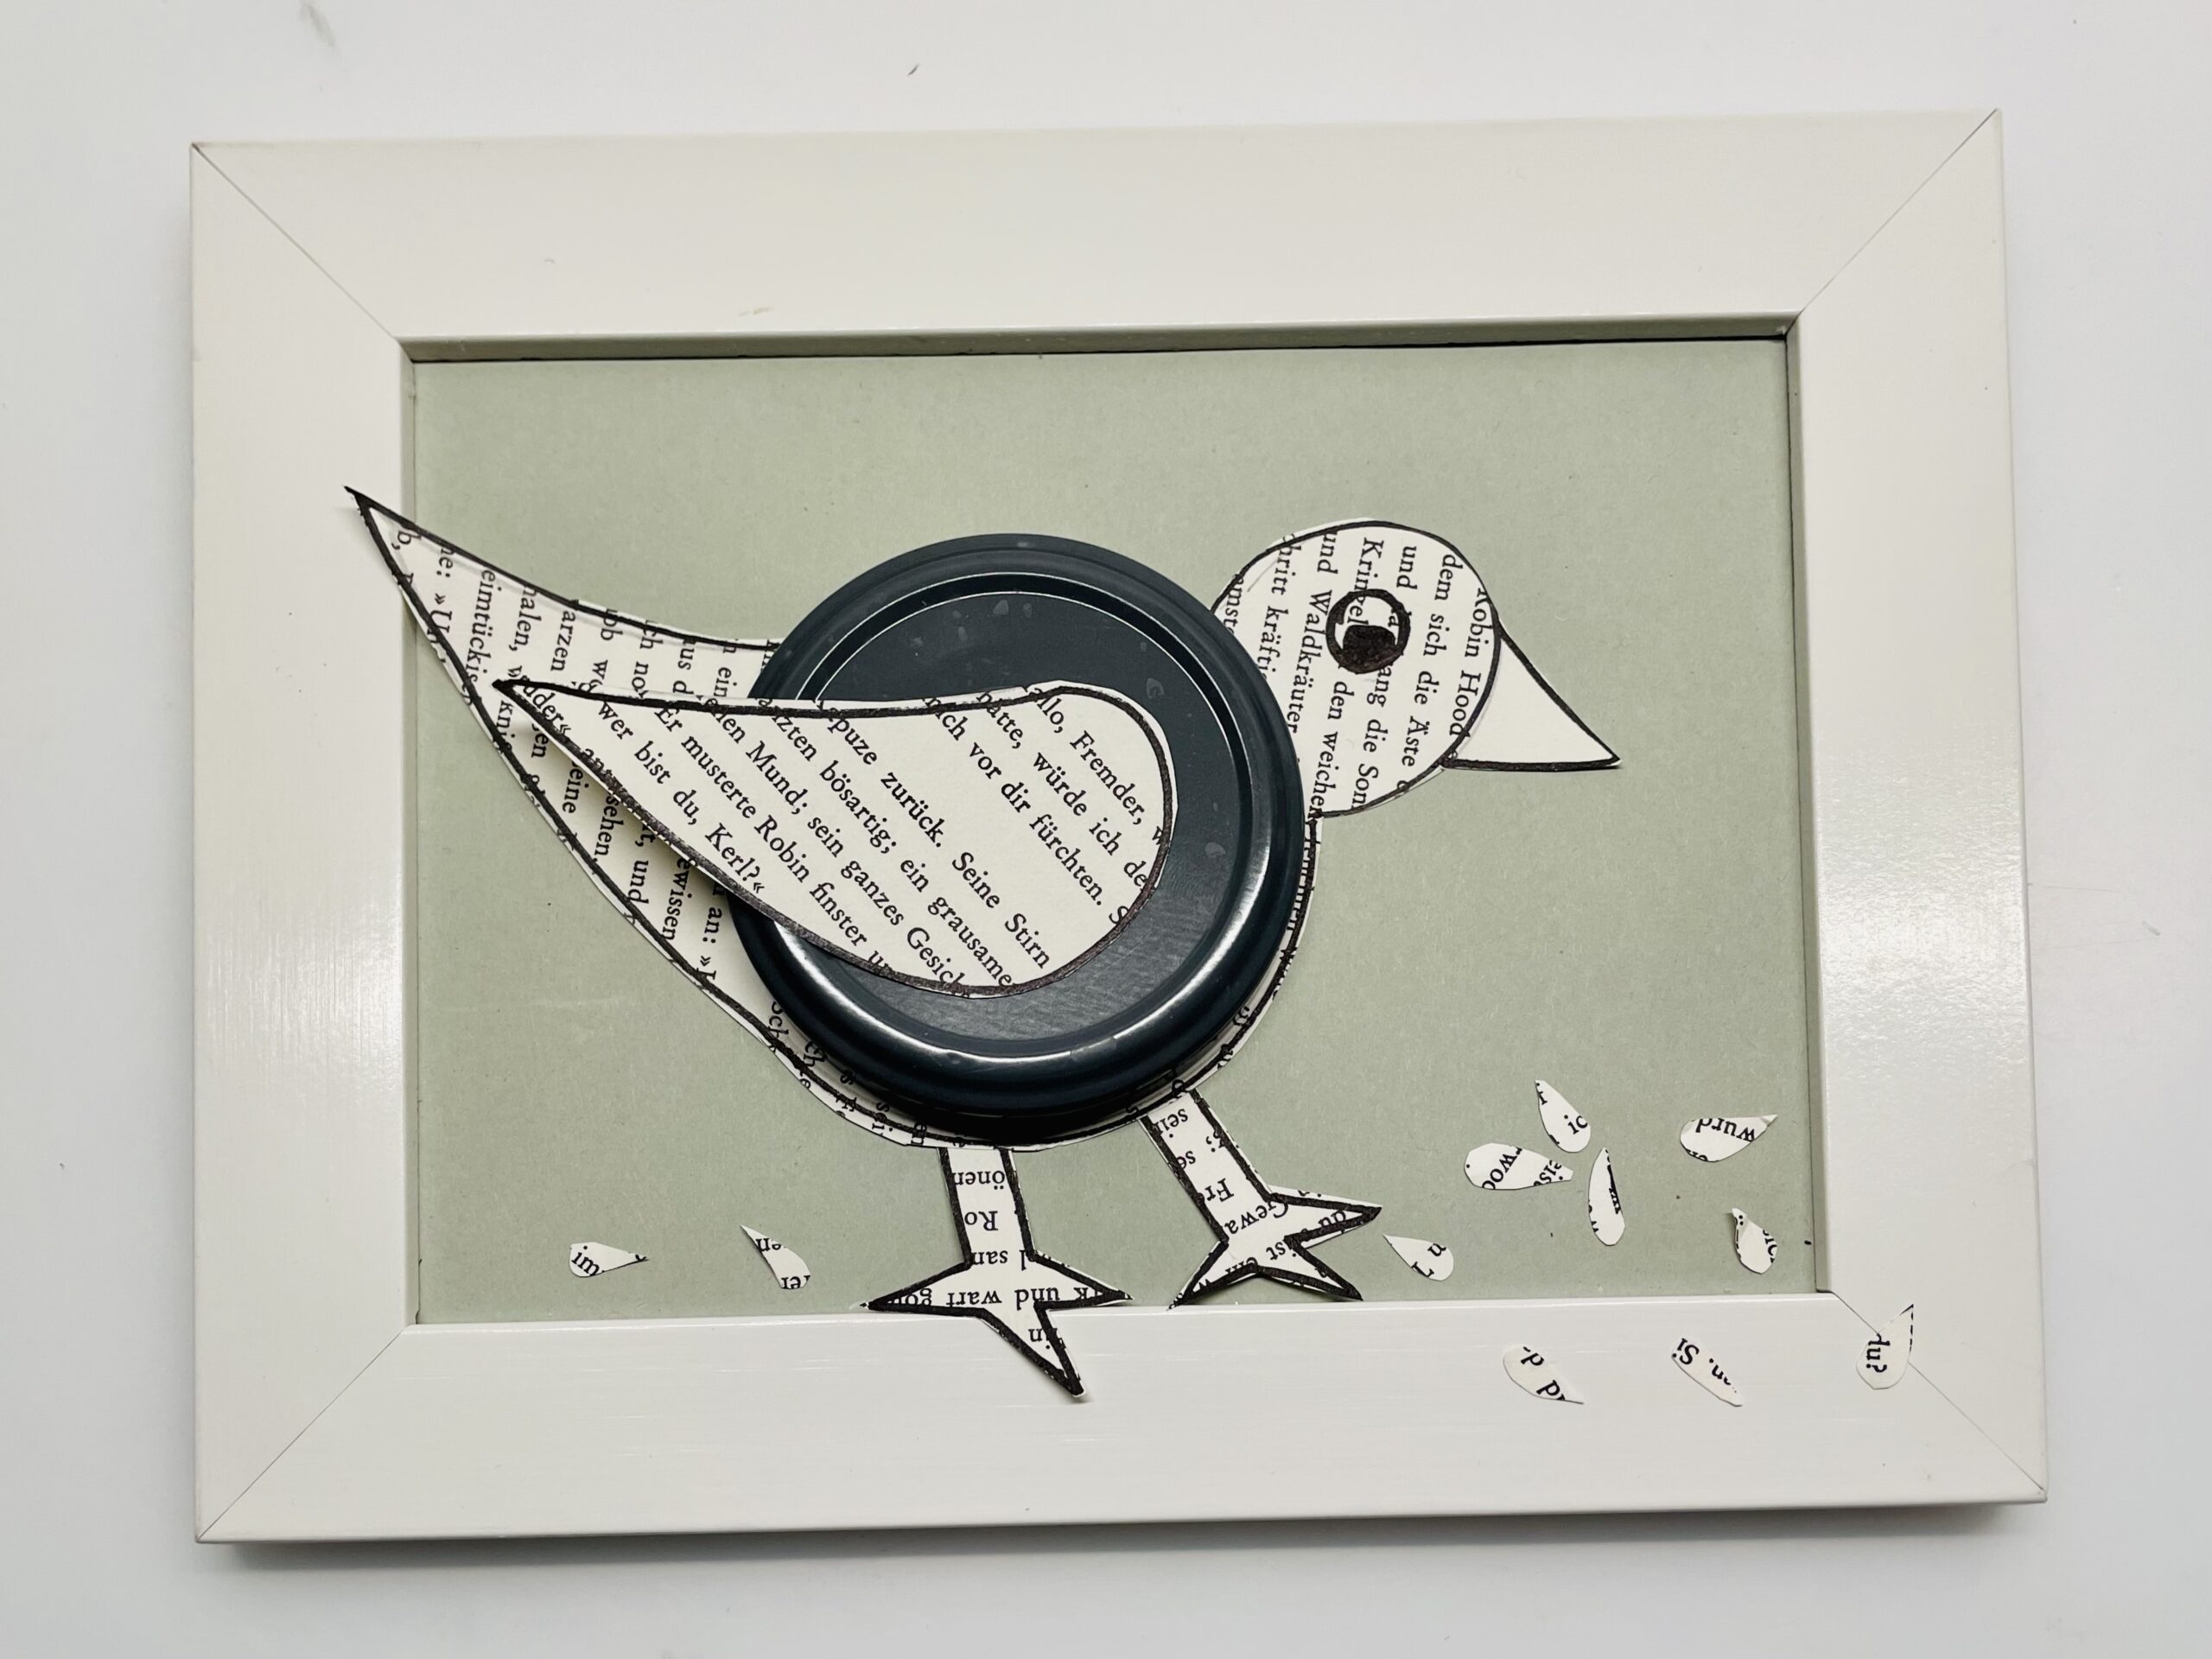 Bild zum Schritt 12 für das Bastel- und DIY-Abenteuer für Kinder: 'Klebt den Vogel auf einen Bilderrahmen. Schneidet kleine Schnipsel oder...'